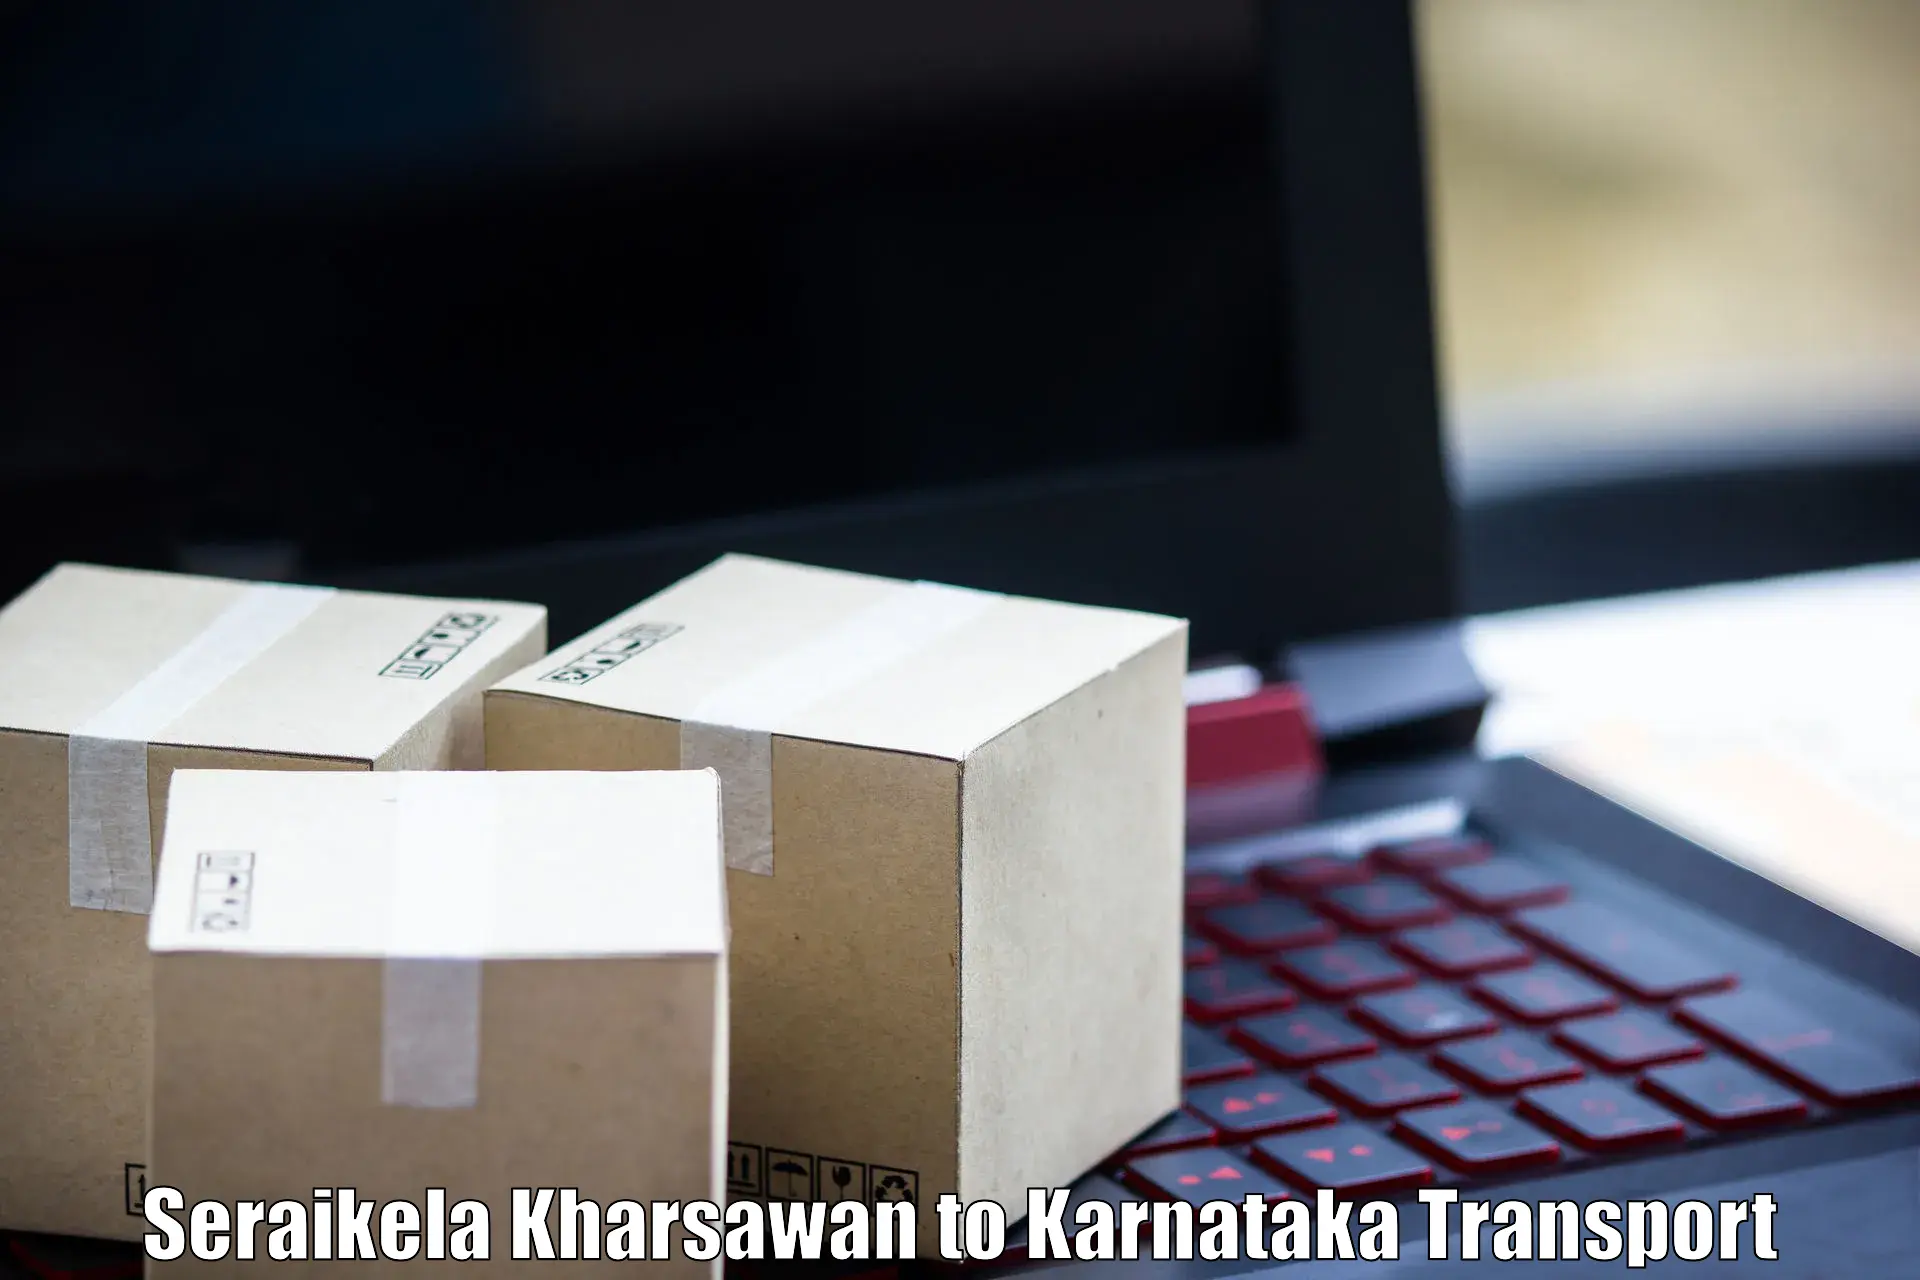 Road transport online services Seraikela Kharsawan to Tikota